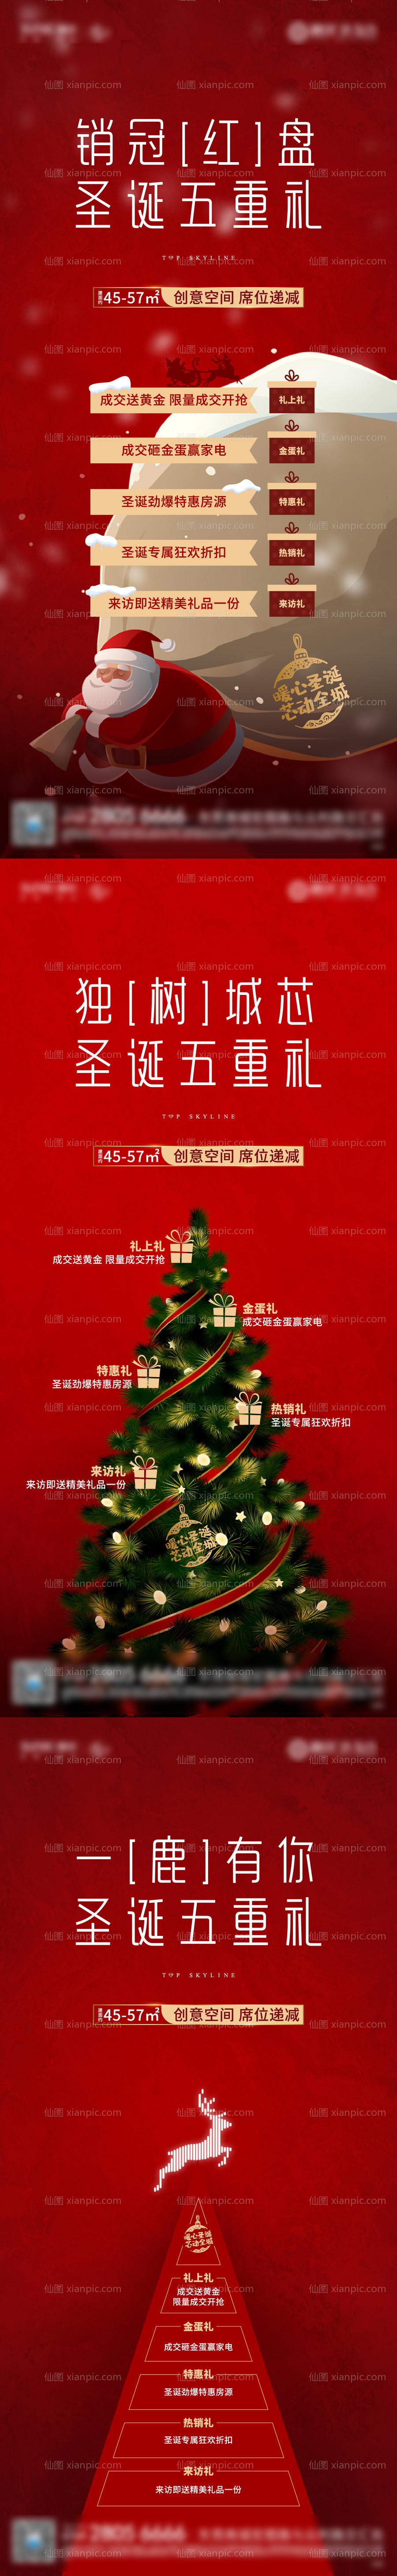 素材乐-地产圣诞节热销系列海报